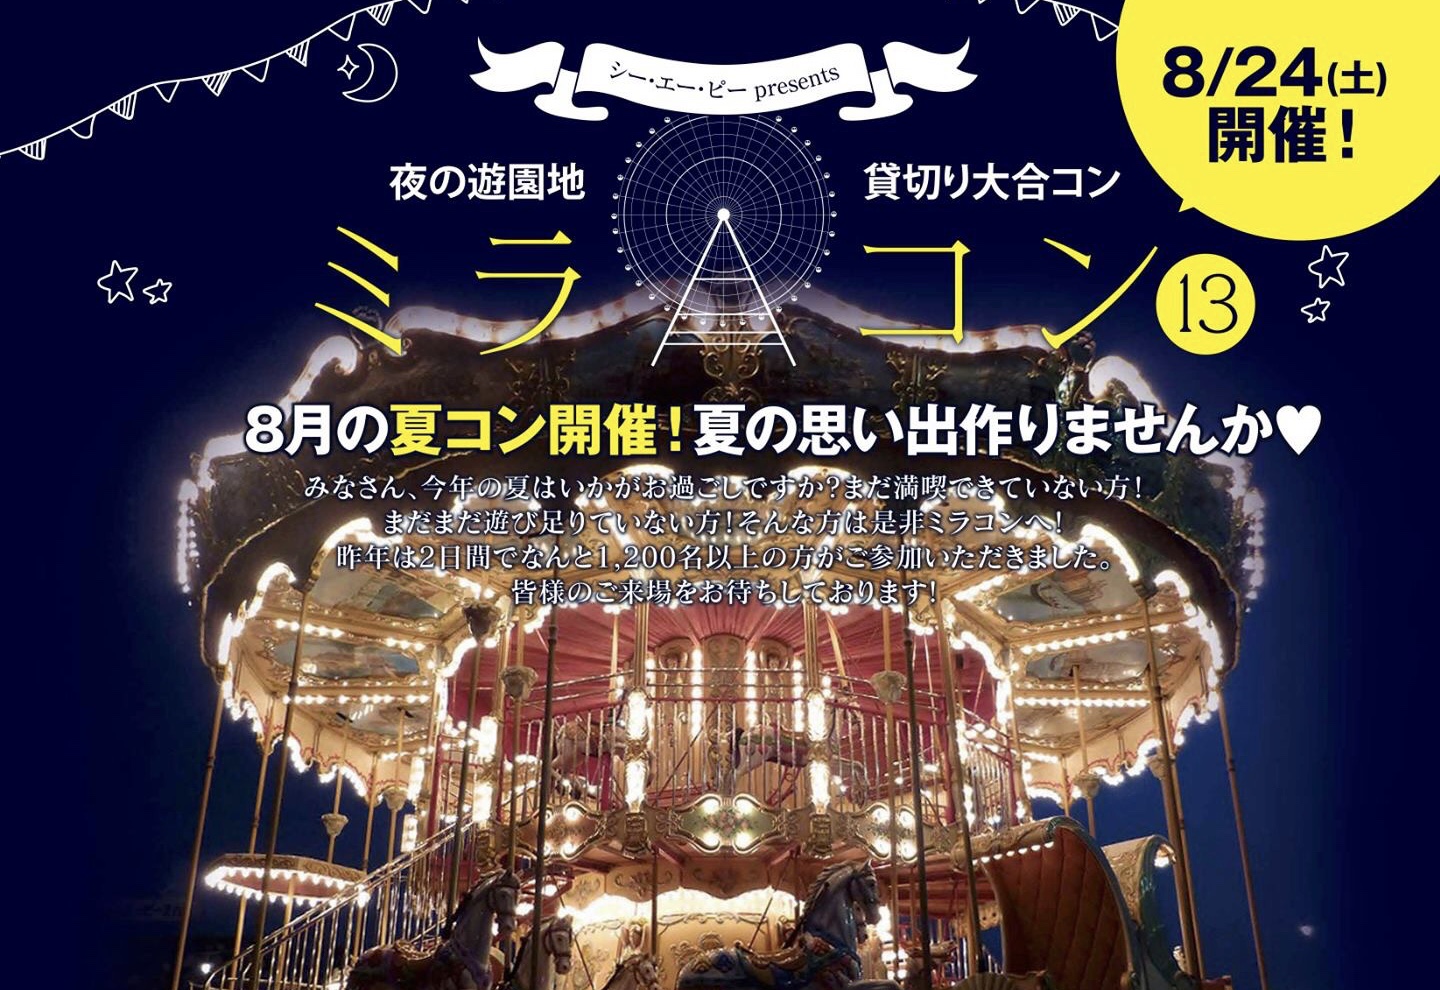 ミラコン13 夜の遊園地で貸し切り大合コンが開催されまーす 富山の遊び場